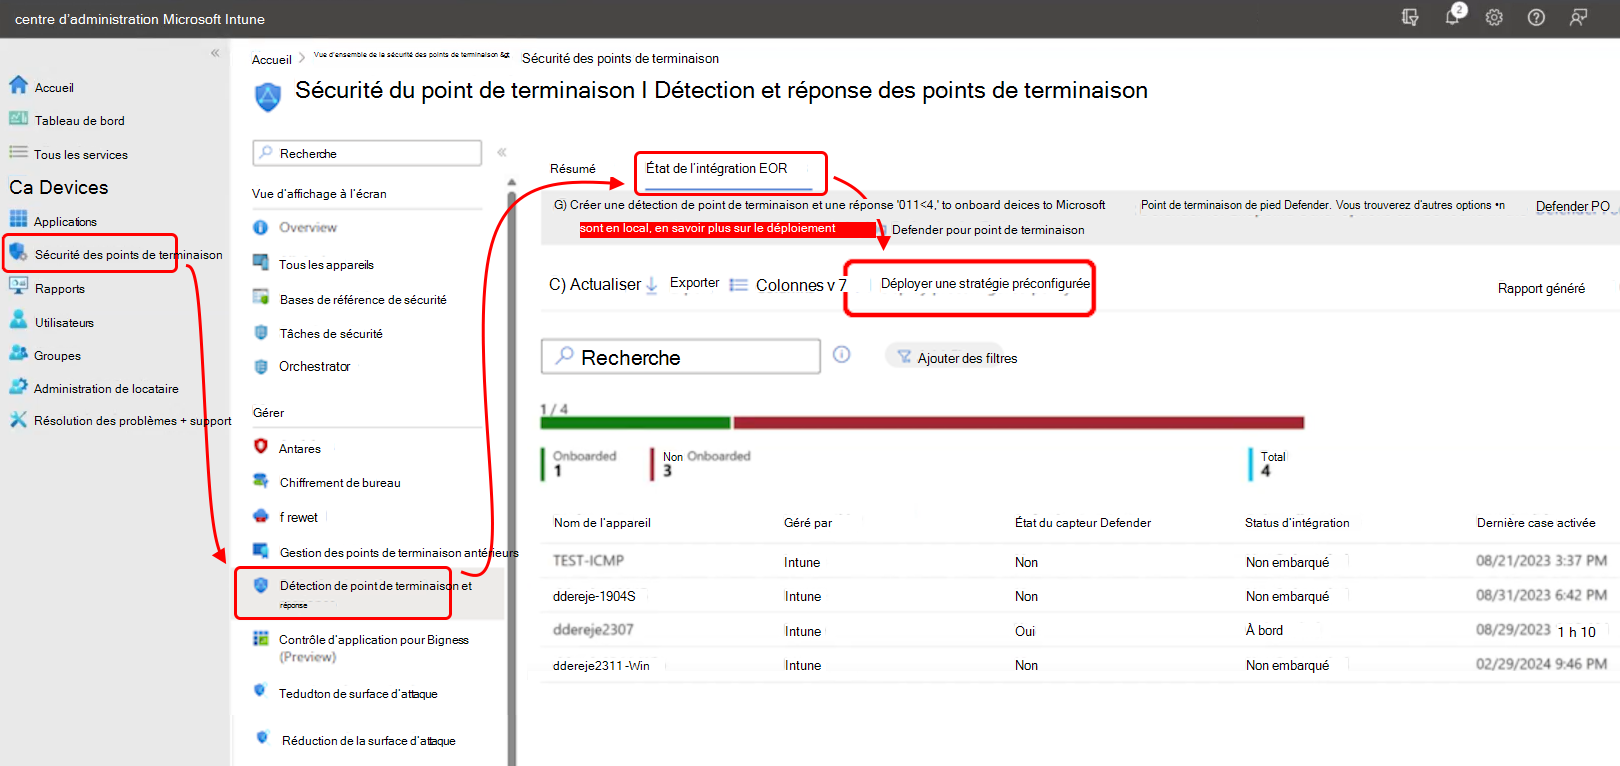 Capture d’écran du centre d’administration qui montre où trouver l’option Déployer une stratégie préconfigurée.